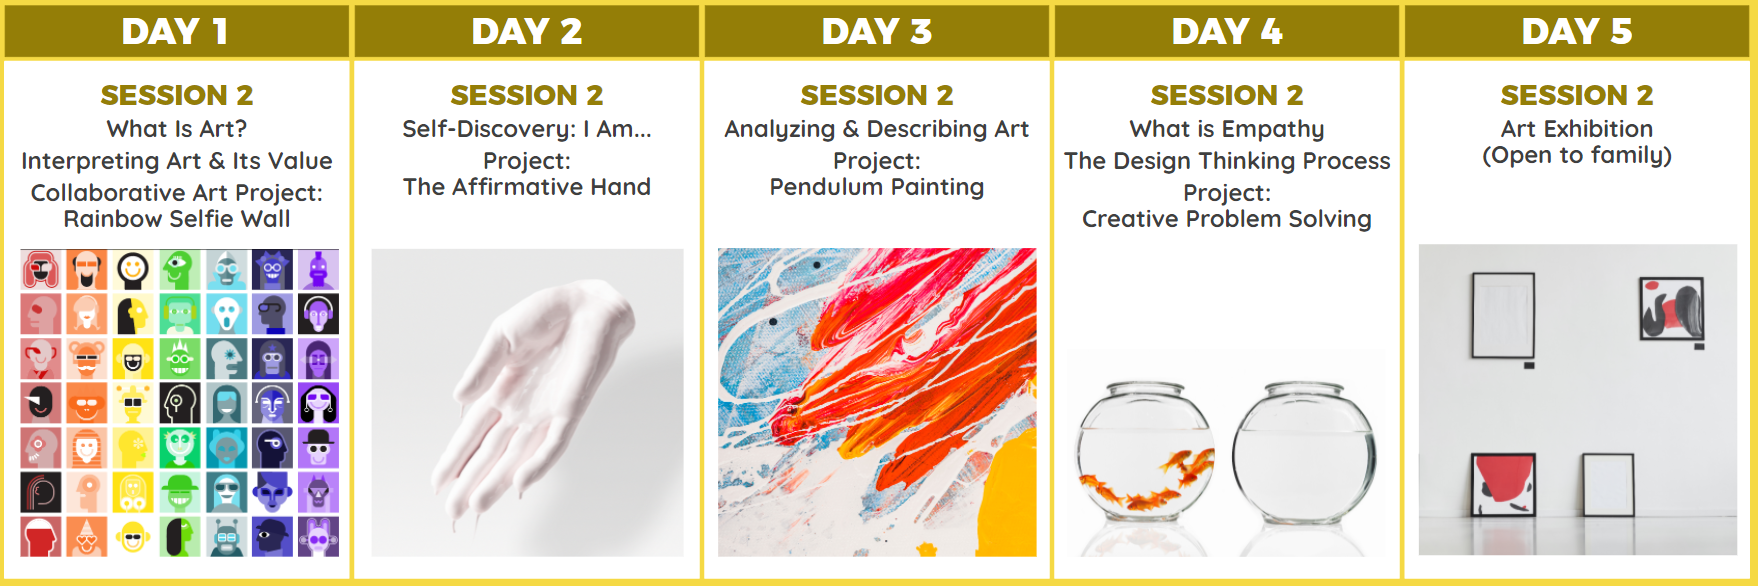 Wonder Art Workshop Session 2 Curriculum Design Across 5 Days